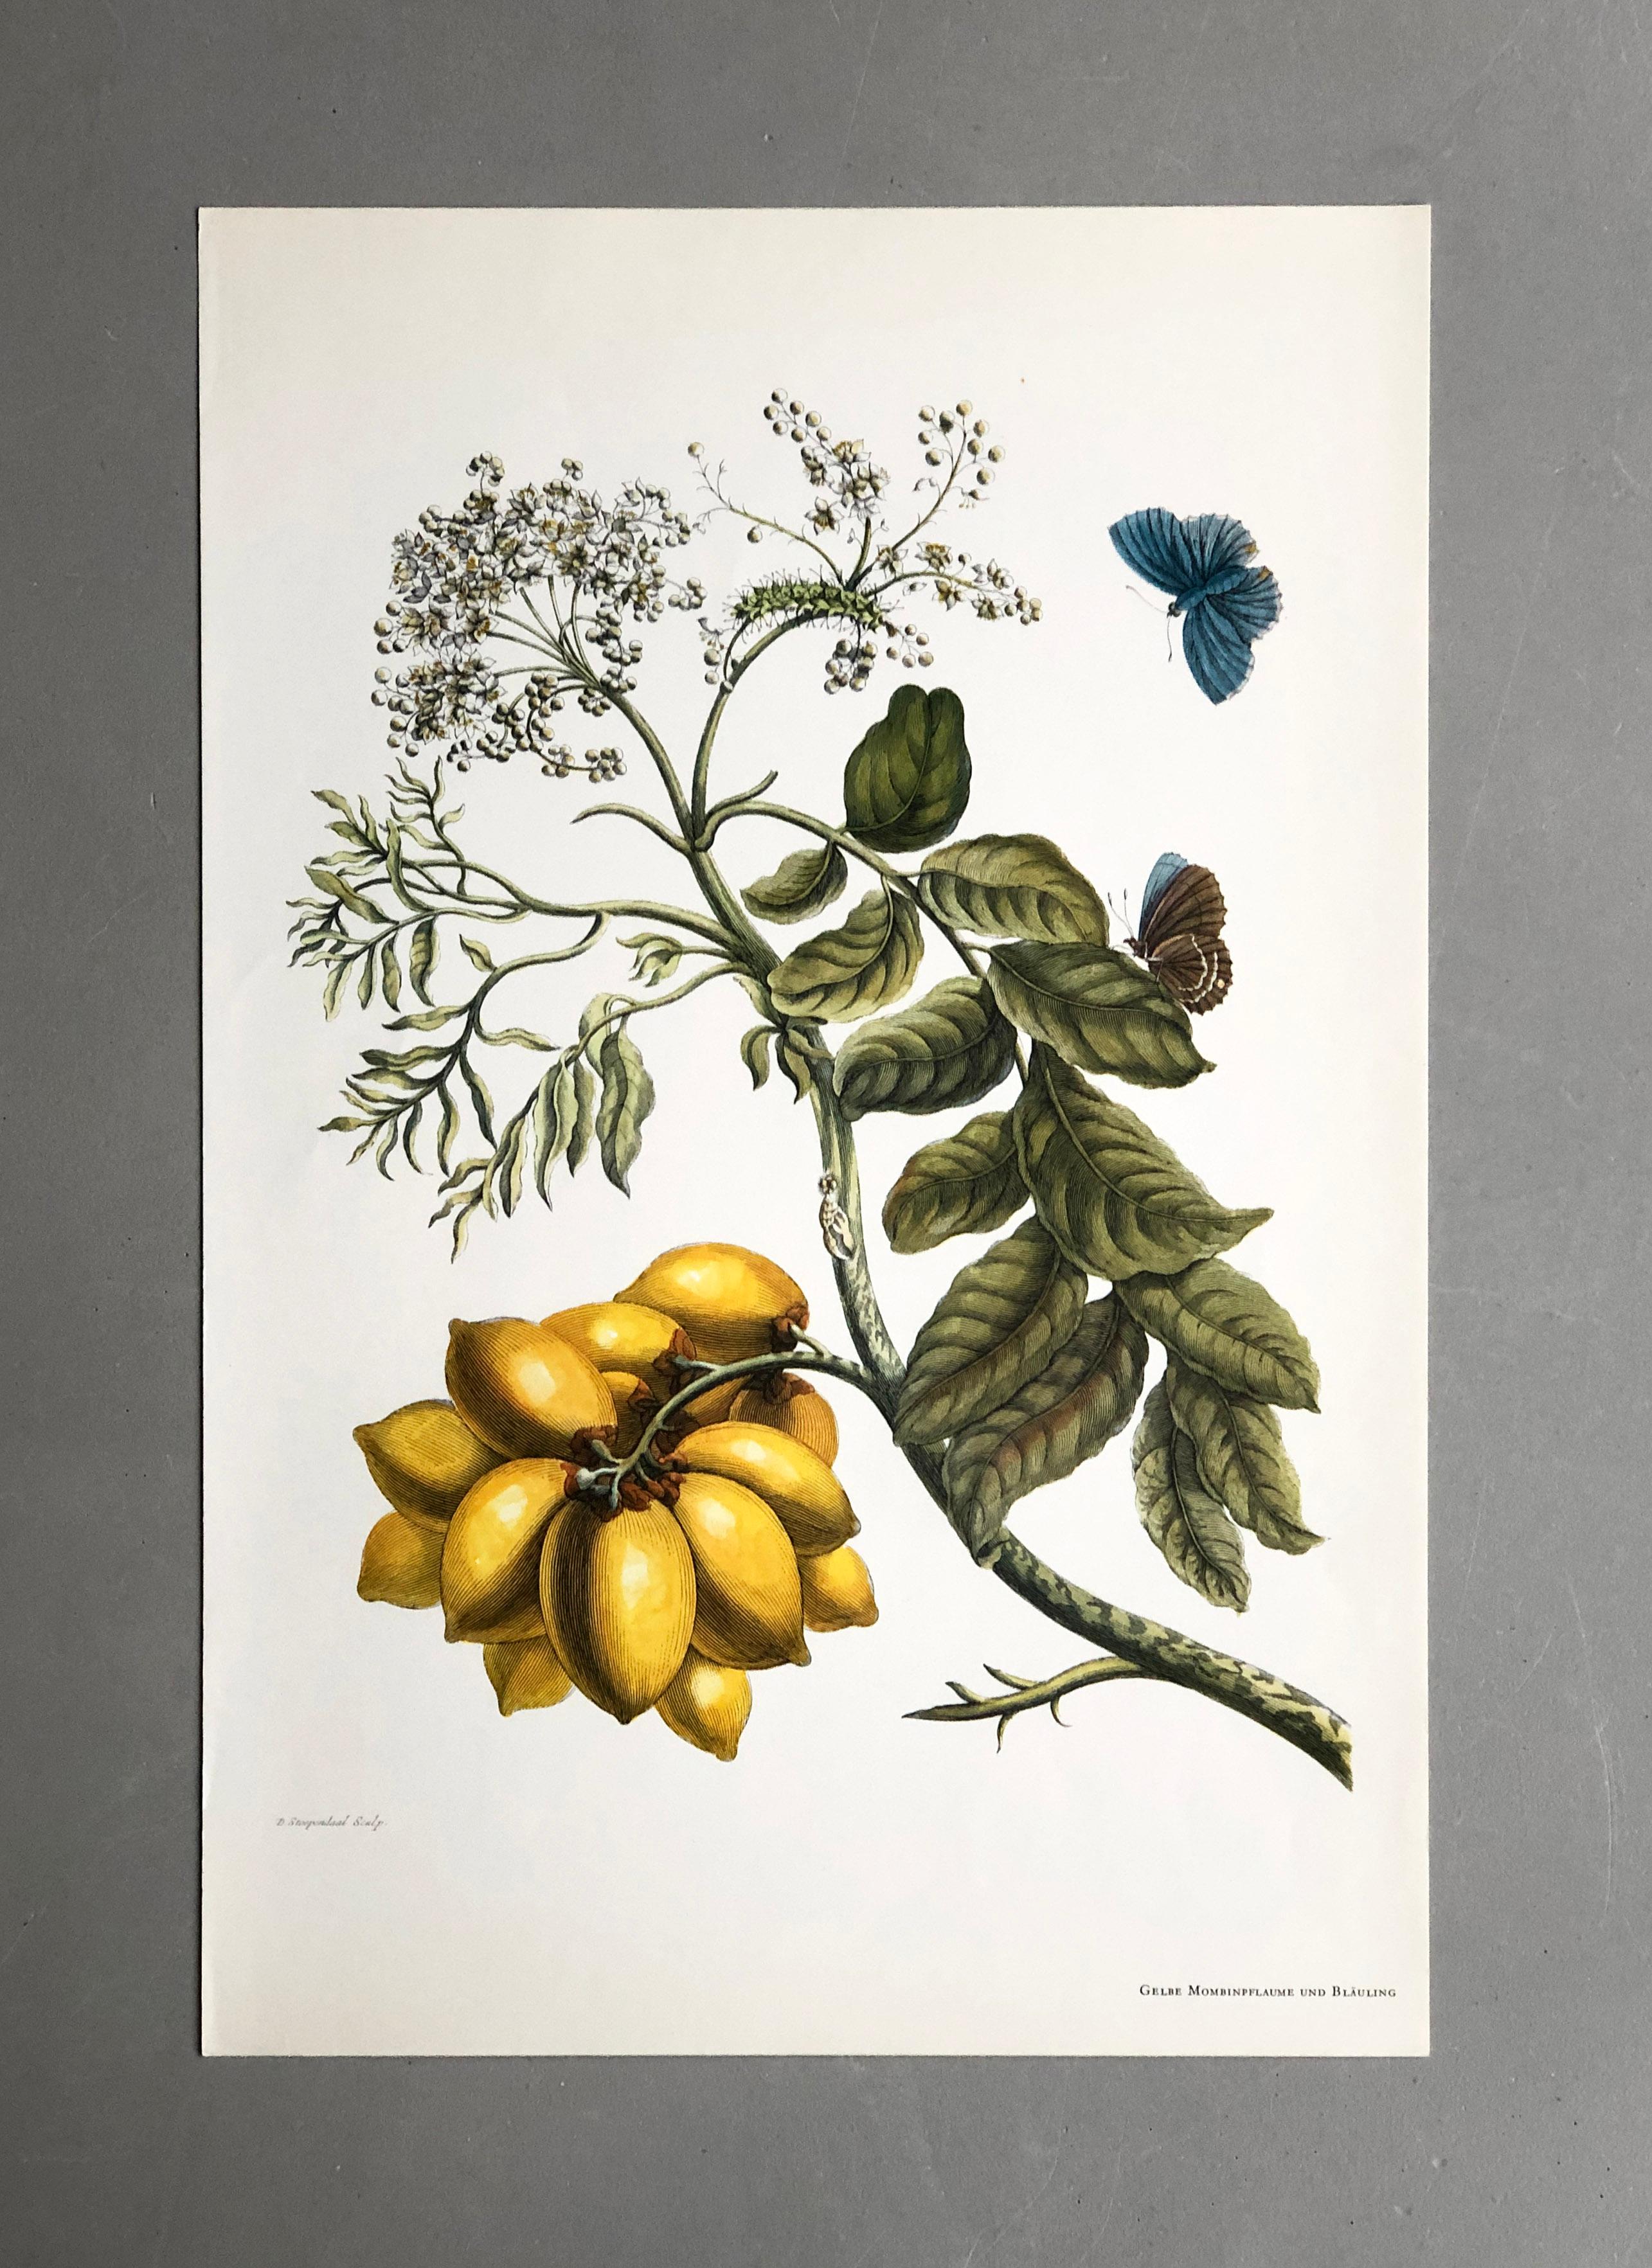 Extrait de Metamorphosis Insectorum Surinamensium, publié pour la première fois en 1705
Gravures de J. Mulder, P. Sluyter (Sluiter) et D. Stoopendaal d'après Maria Sybilla Merian.

Cette plaque fait partie d'une collection complète comprenant 17